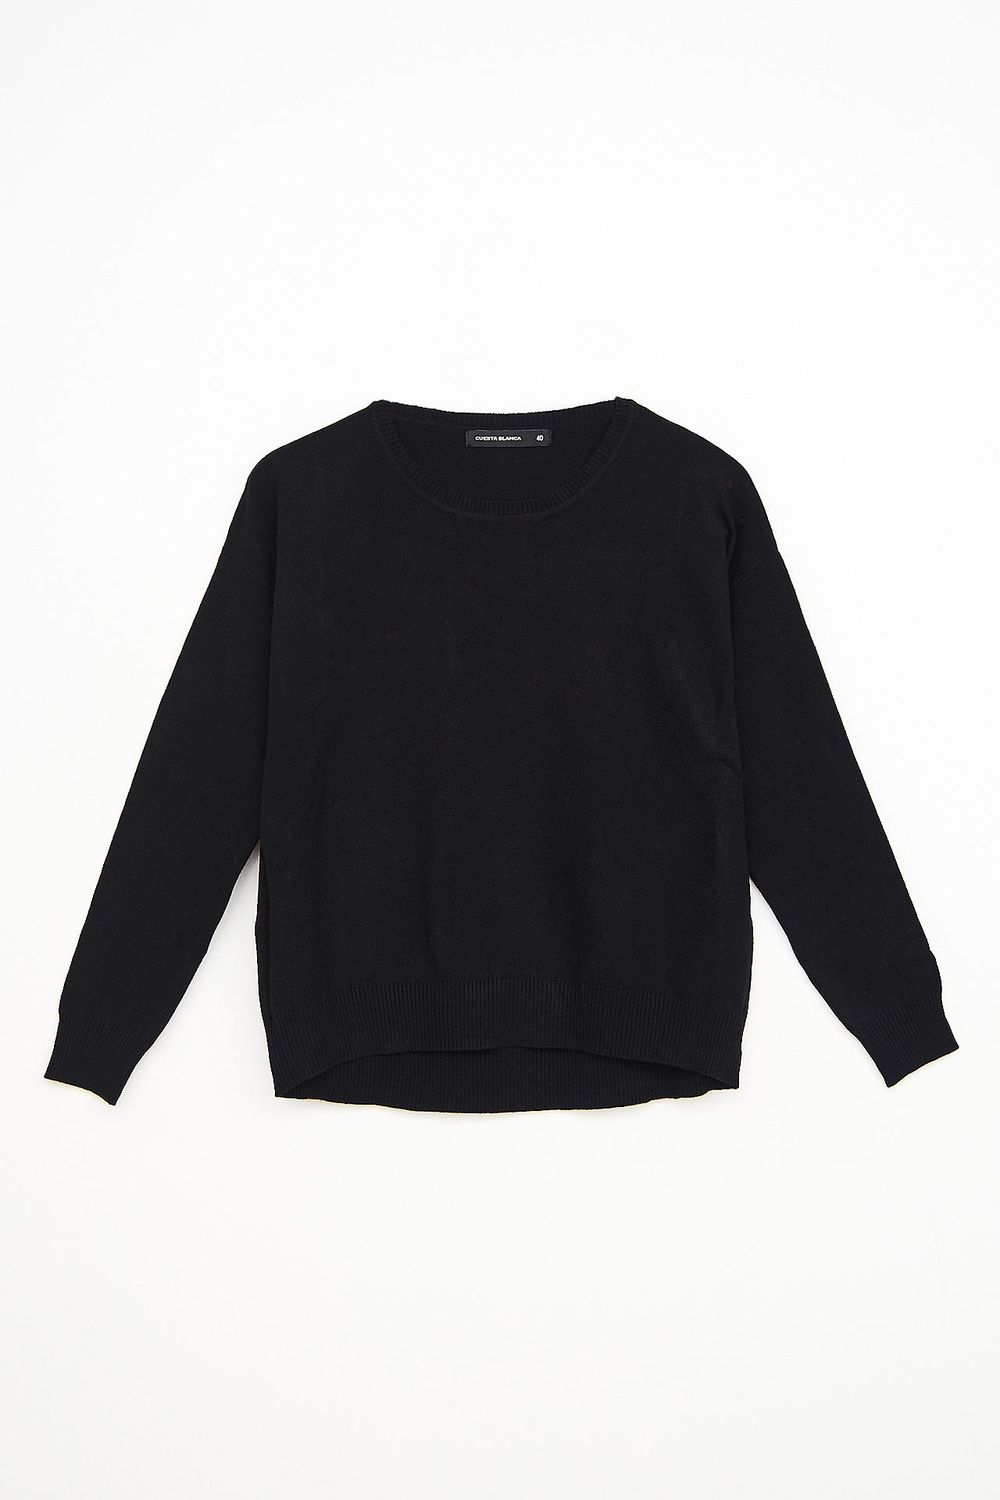 sweater-erminda-negro-40